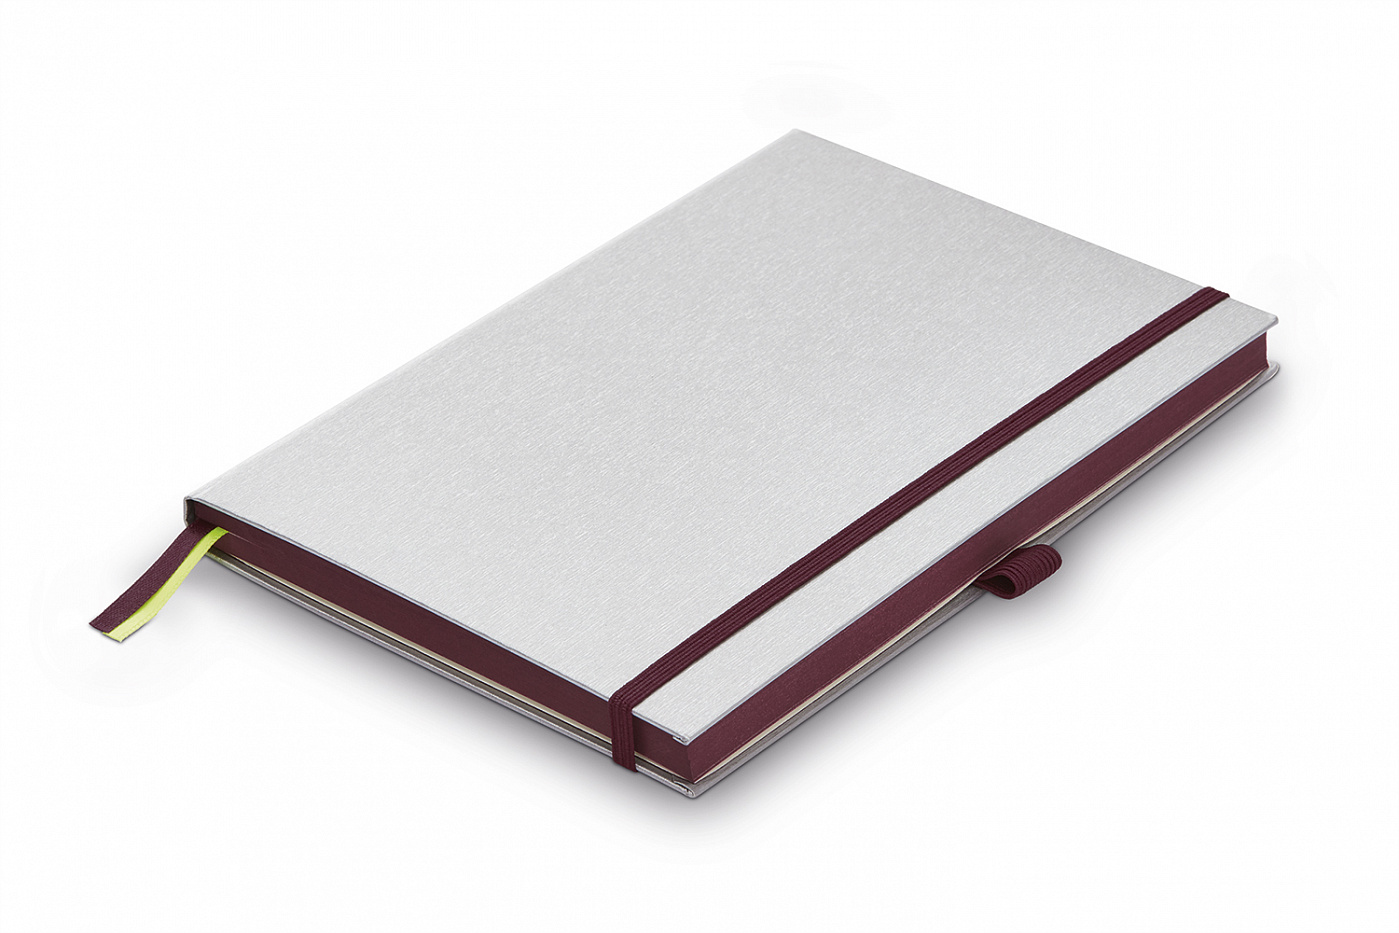 Записная книжка LAMY А6 192 стр, жесткая обложка серебристого цвета, обрез пурпурный записная книжка moleskin classic medium чёрная 120 листов а5